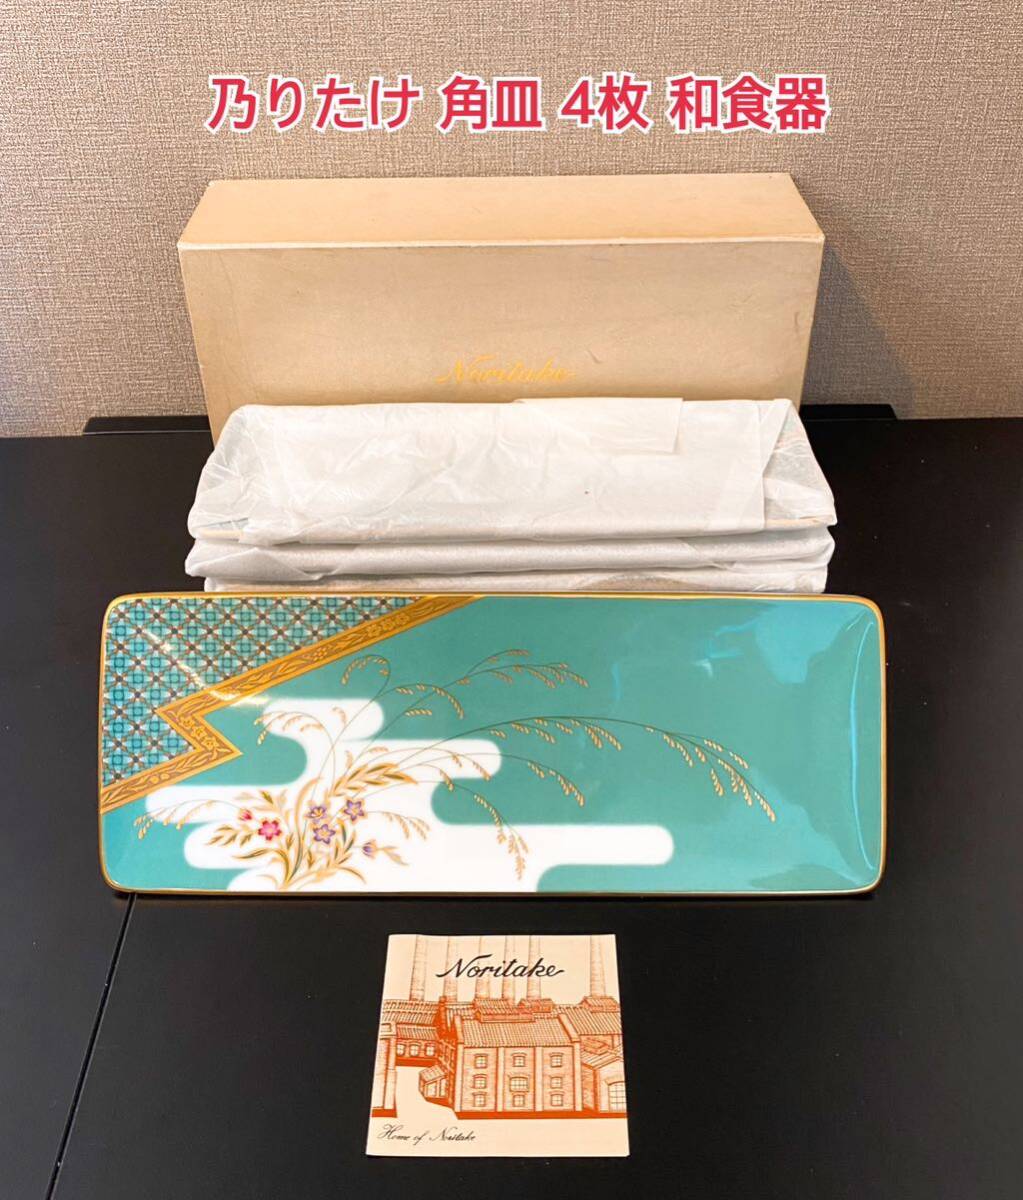 乃りたけ 角皿 4枚 ノリタケ Noritake 和食器 和風モダン 銘々皿 未使用品 A443の画像1